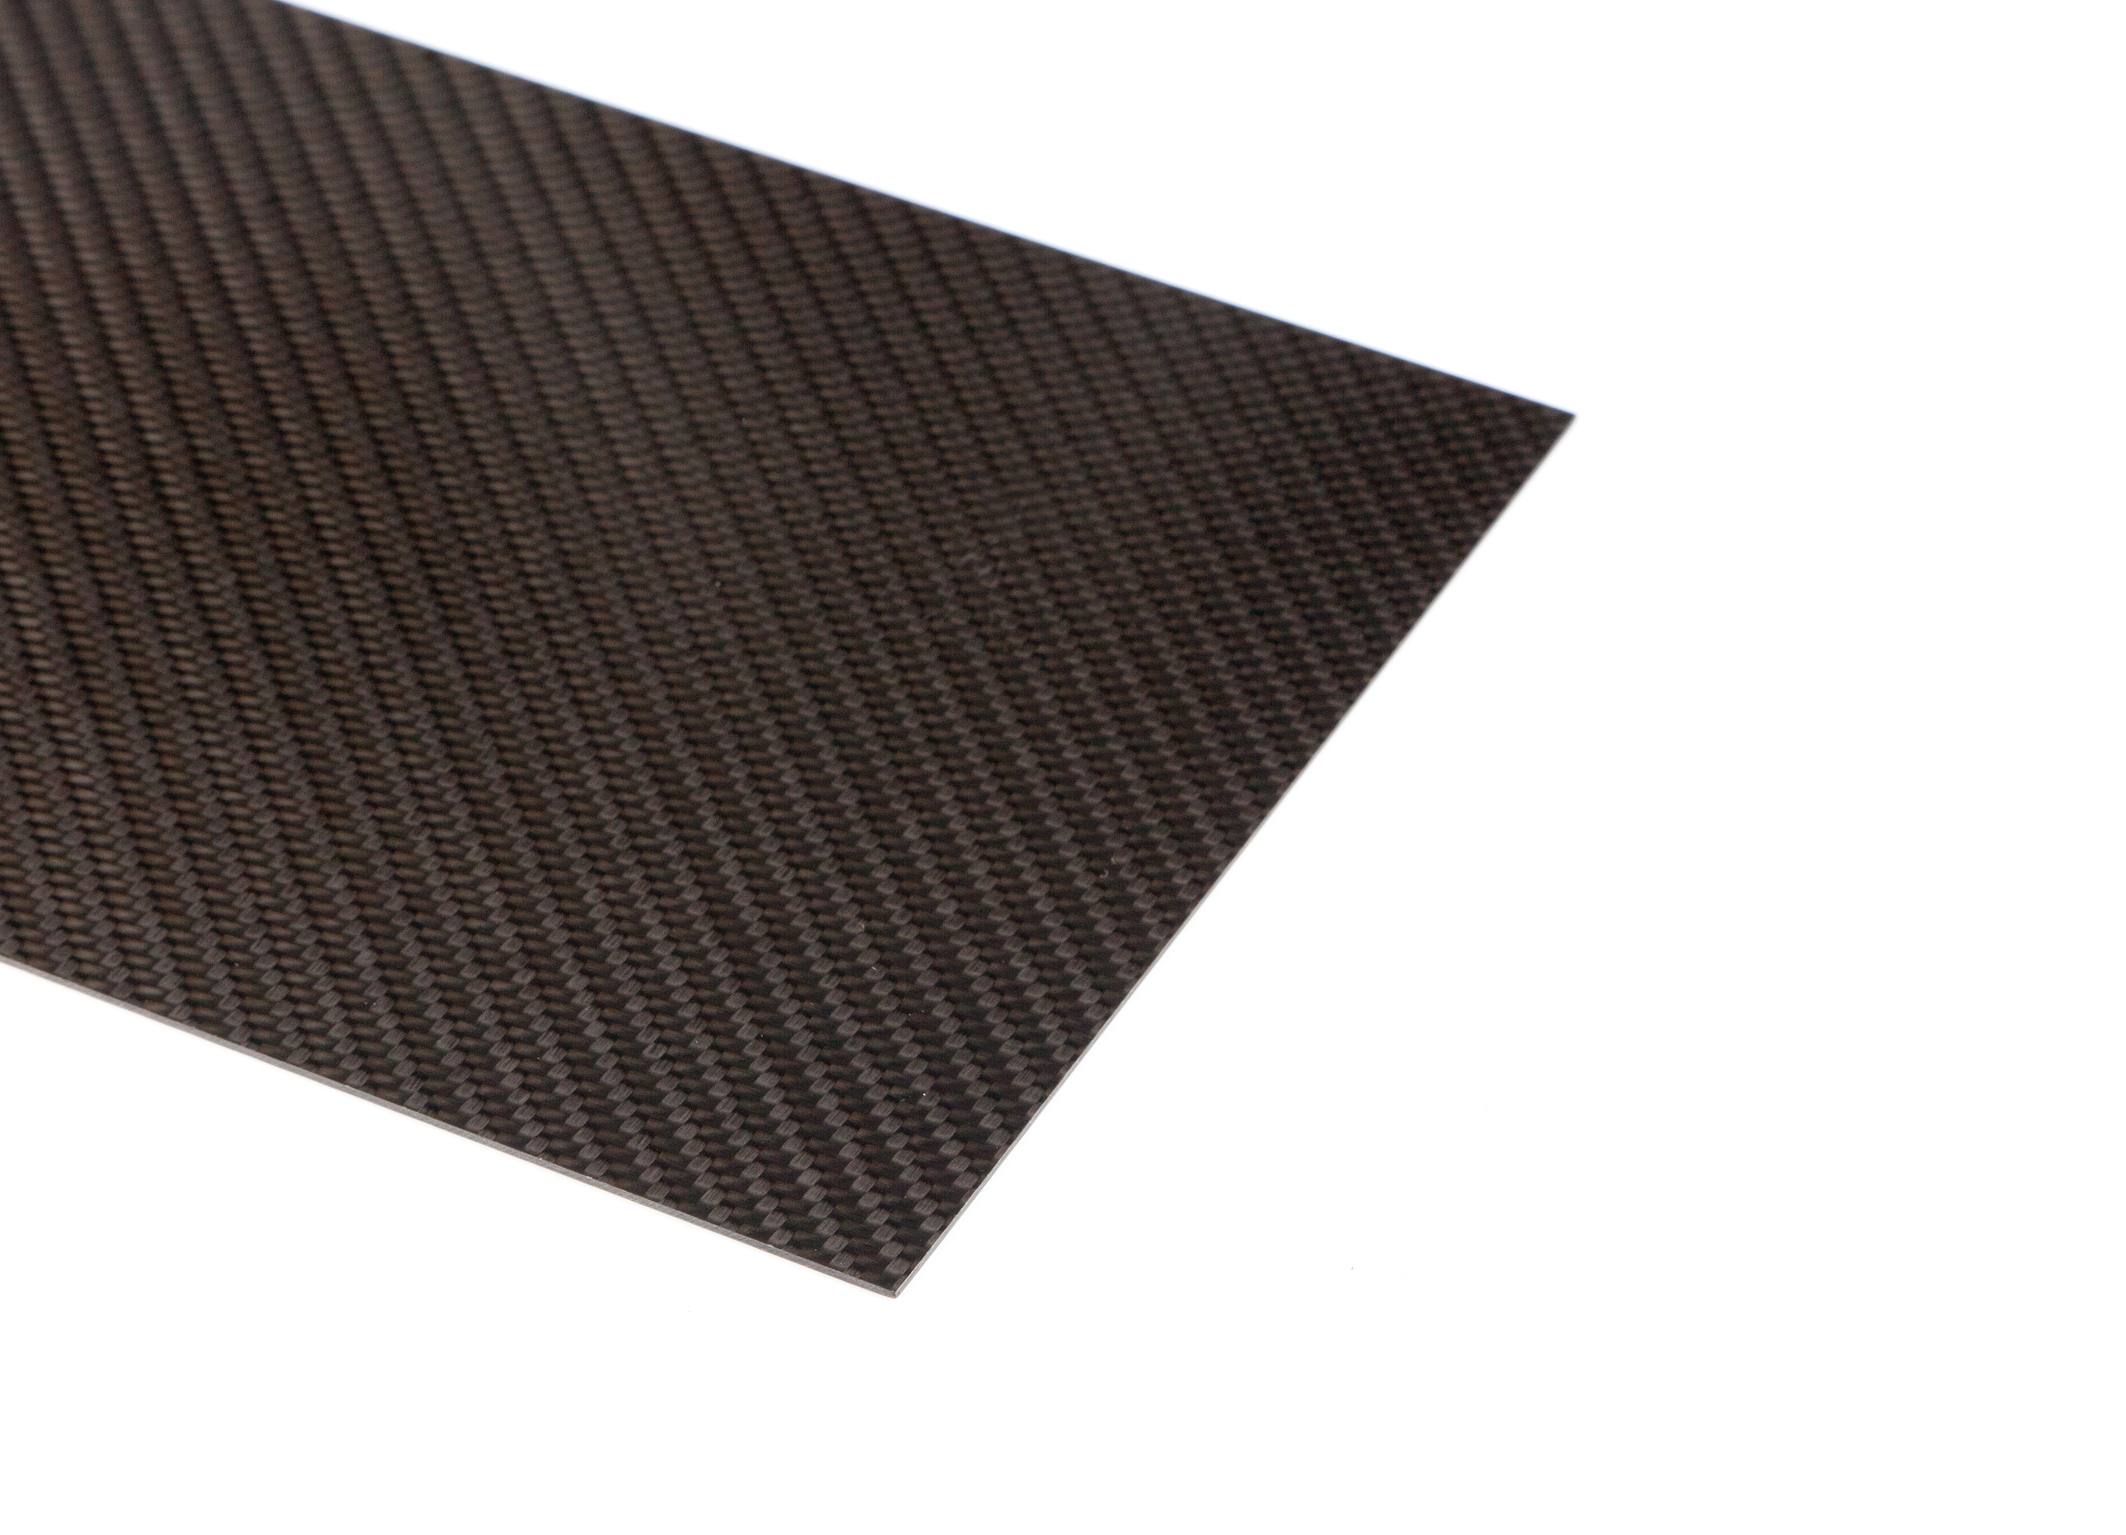 Größe 500 x 500 mm CFK Kohlefaser Köper Voll Carbon Carbon Platte 3mm 